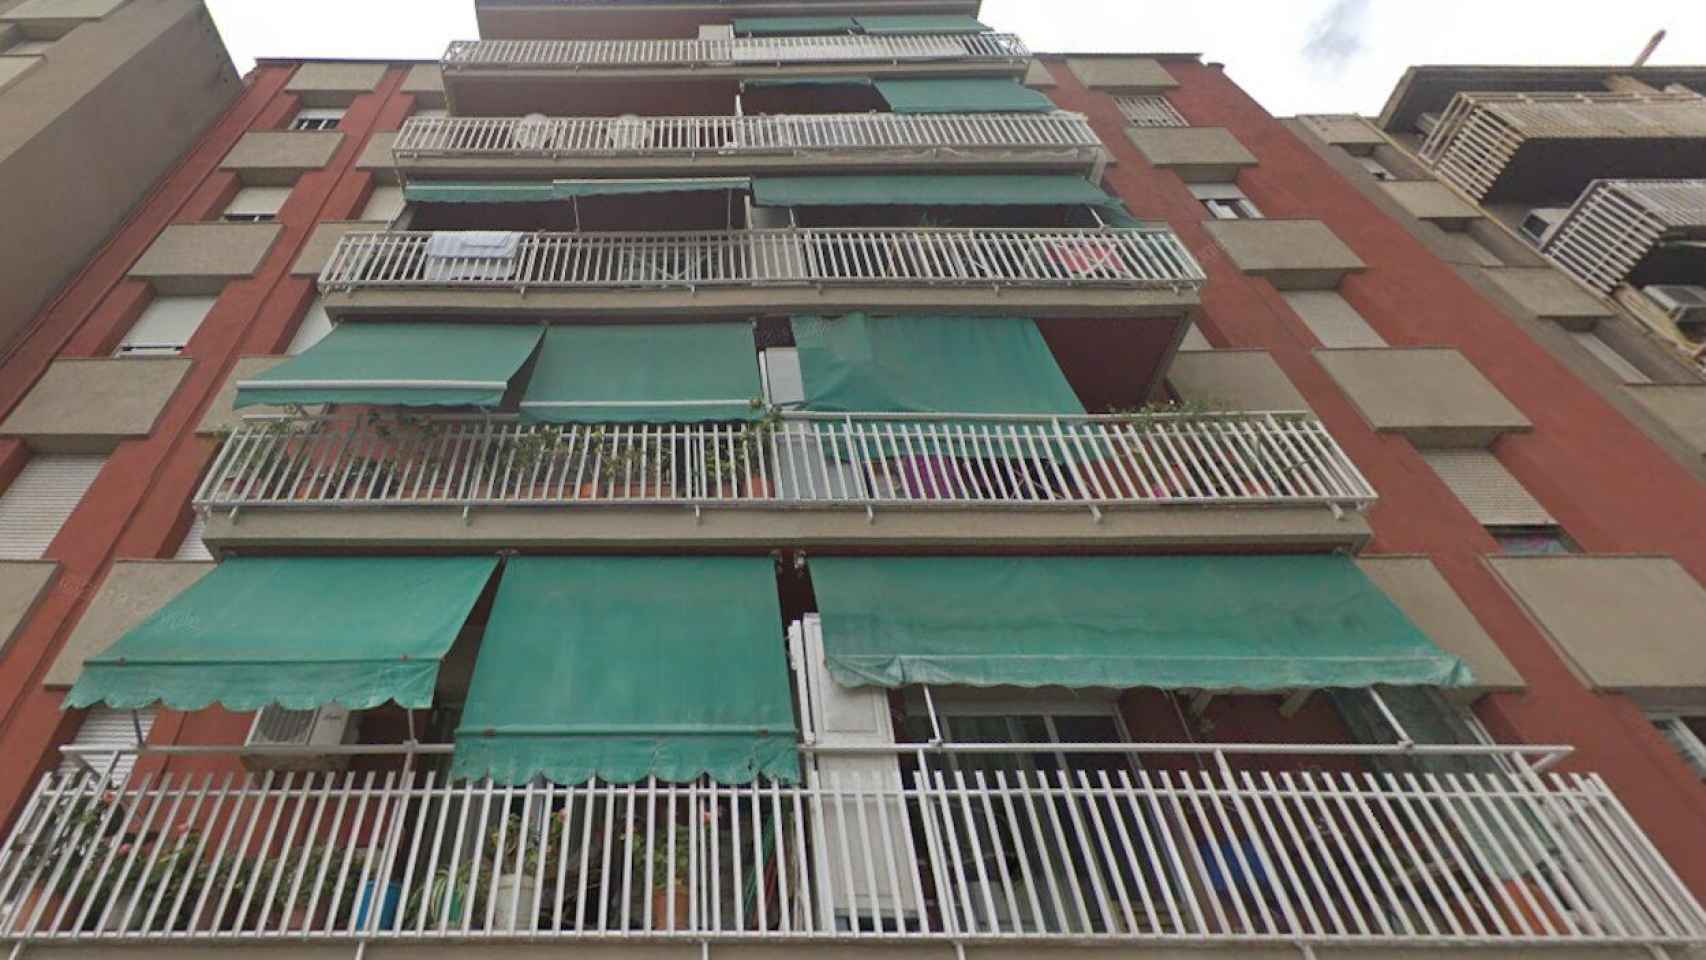 El edificio de Mataró al que intentaron acceder unos okupas descolgándose con una cuerda / GOOGLE STREET VIEW